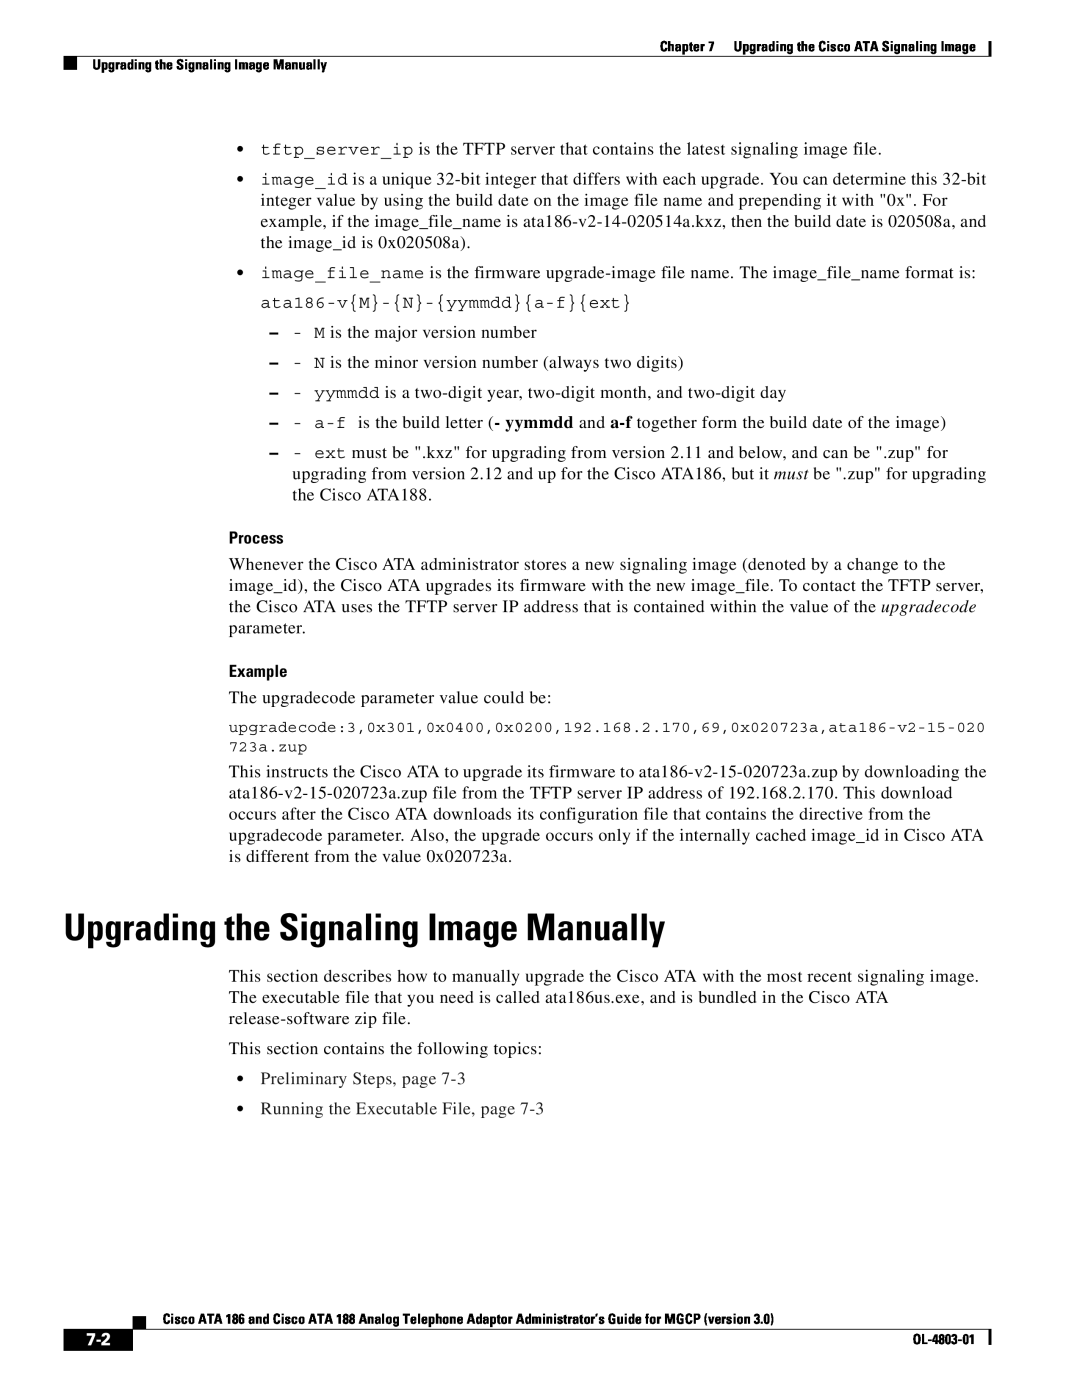 Cisco Systems ATA 186, ATA 188 manual Upgrading the Signaling Image Manually, Process, Example 